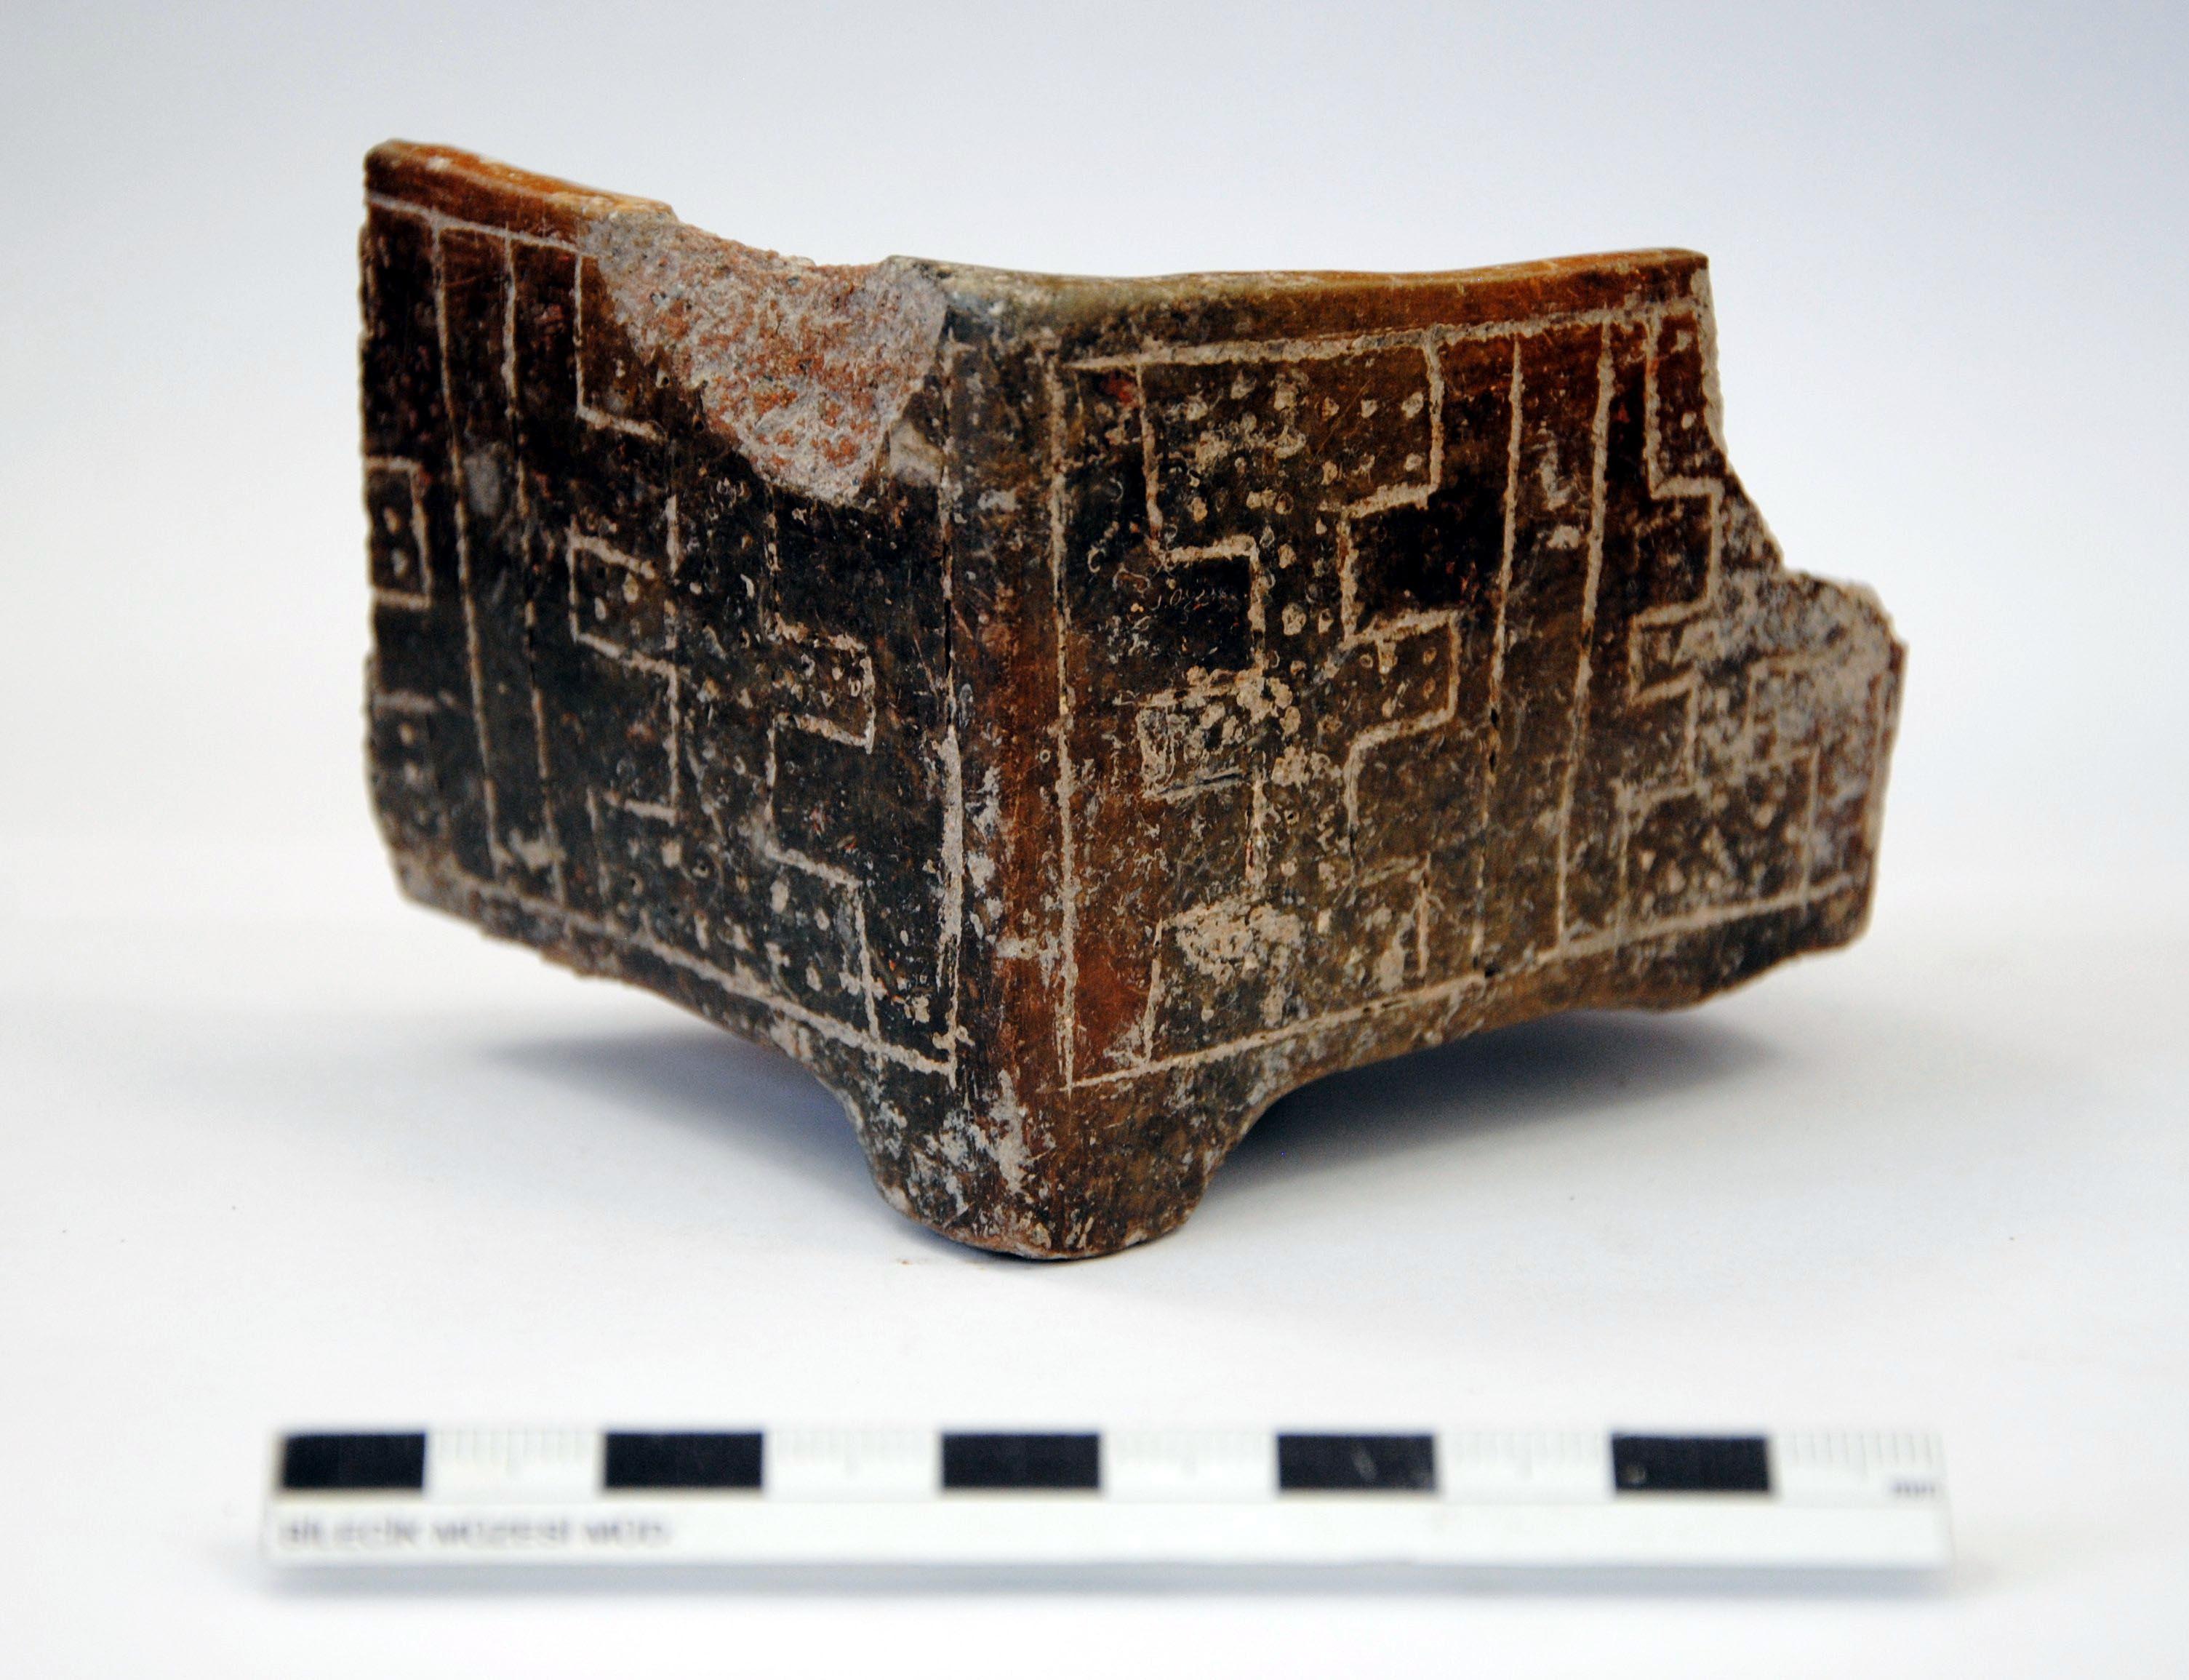 Apartman bahçesinde kazı; 8 bin 500 yıllık 11 insan iskeleti ve 3 delikli müzik aleti bulundu